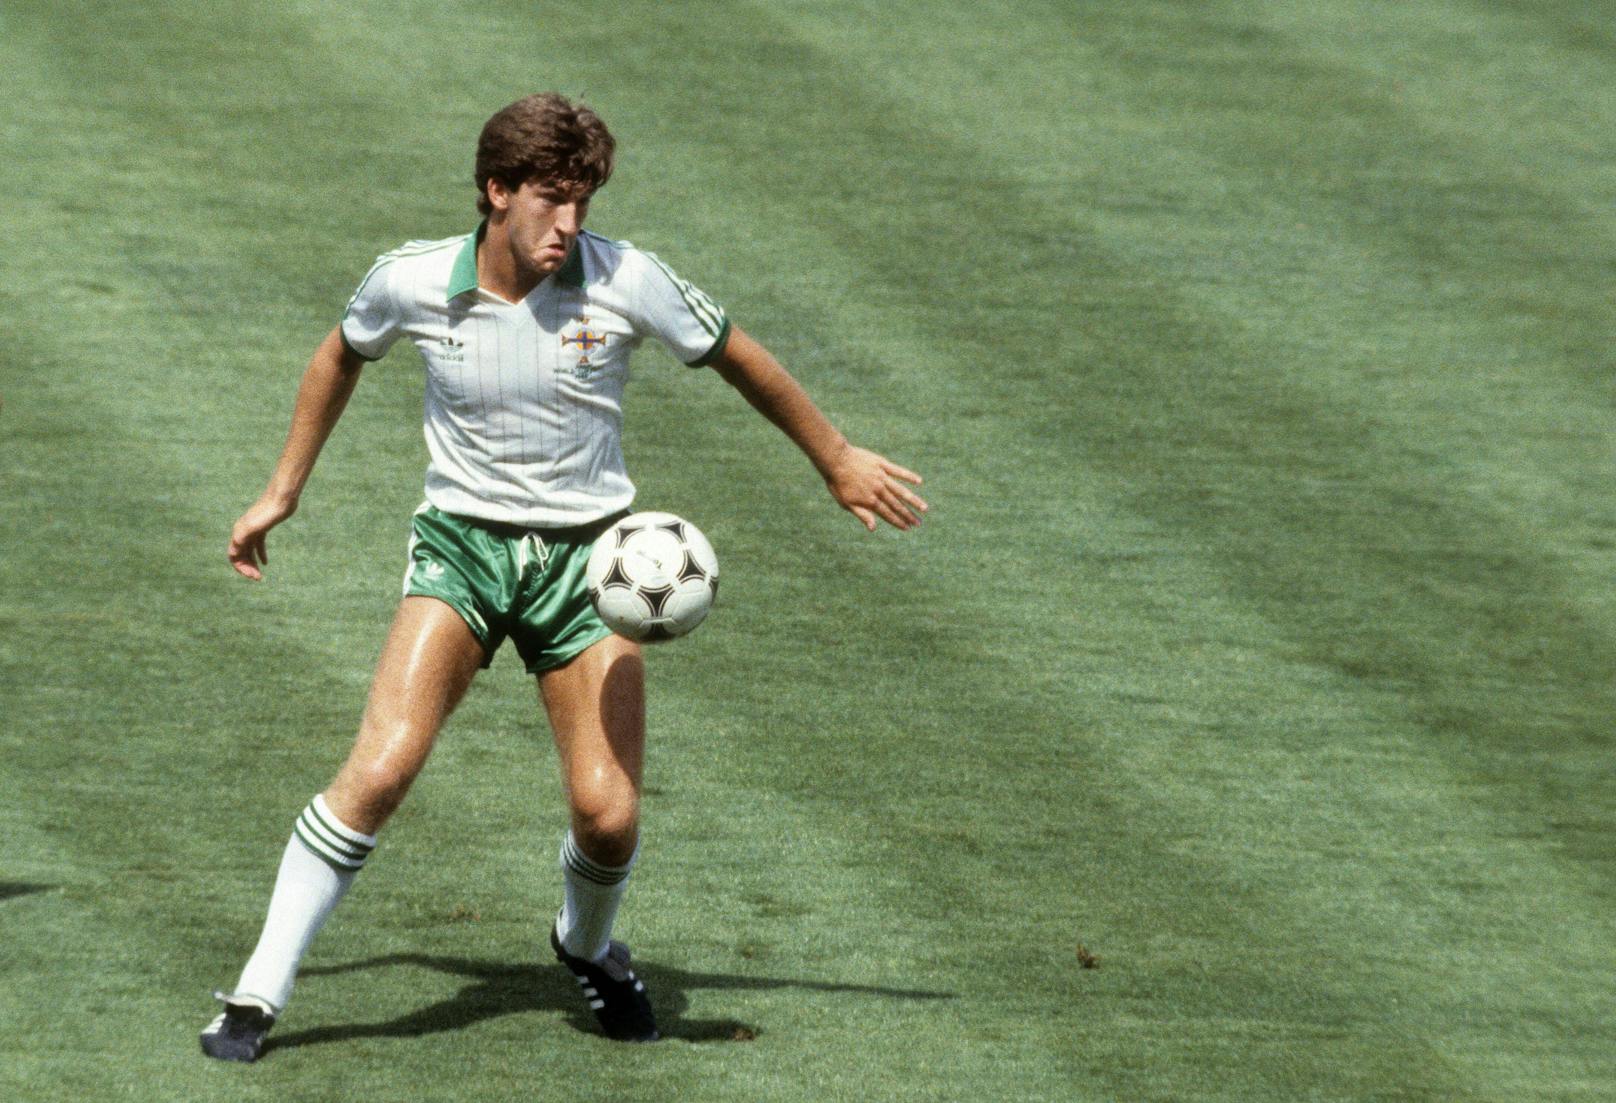 Der jüngste WM-Teilnehmer: Norman Whiteside stand bei der WM 1982 im Alter von 17 Jahren und 41 Tagen im Nordirland-Kader.